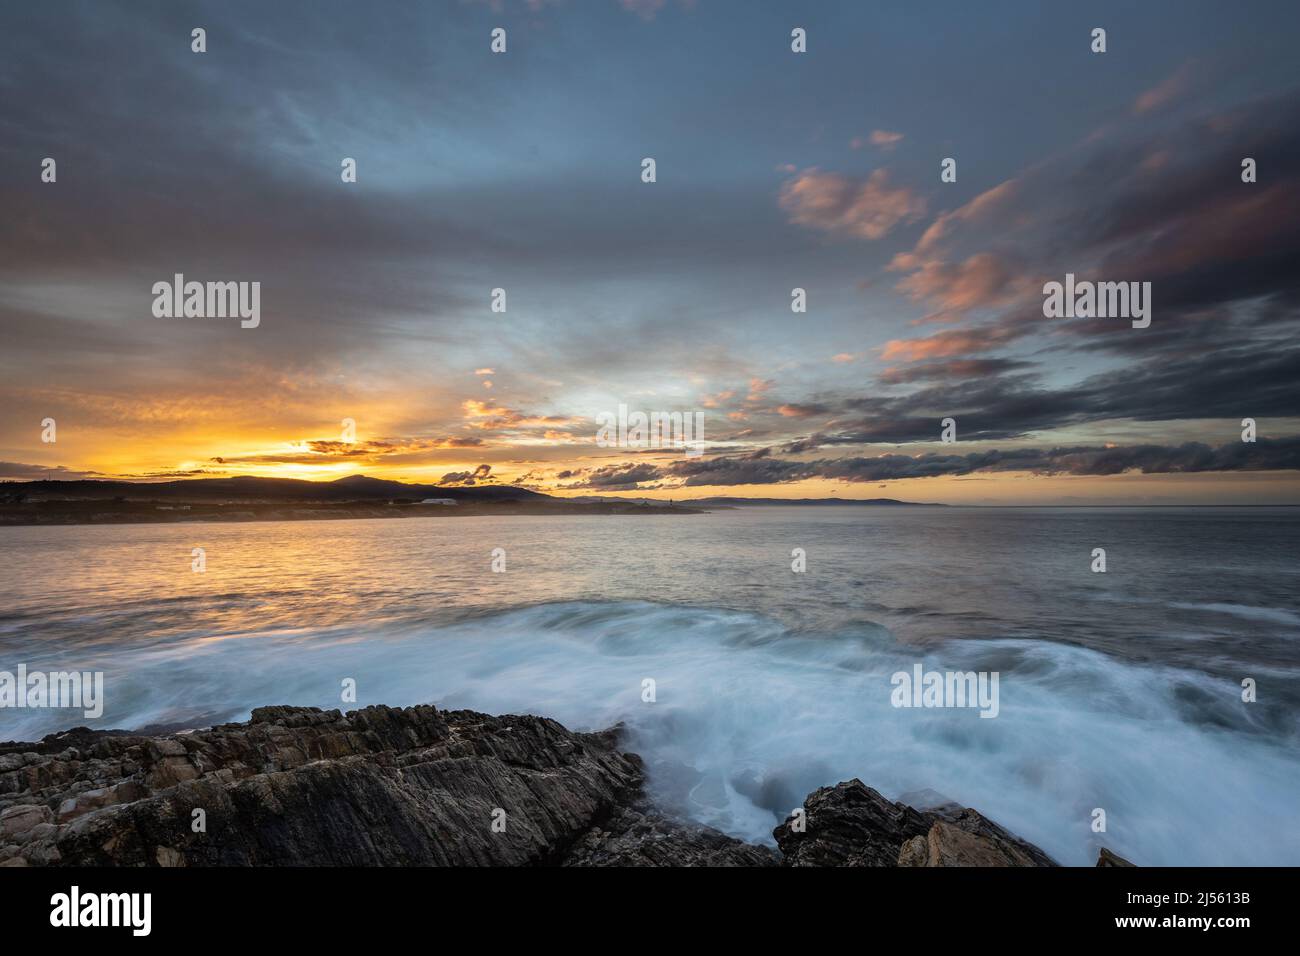 Espectacular y colorida puesta de sol en la costa de Asturias con un faro como protagonista Foto de stock